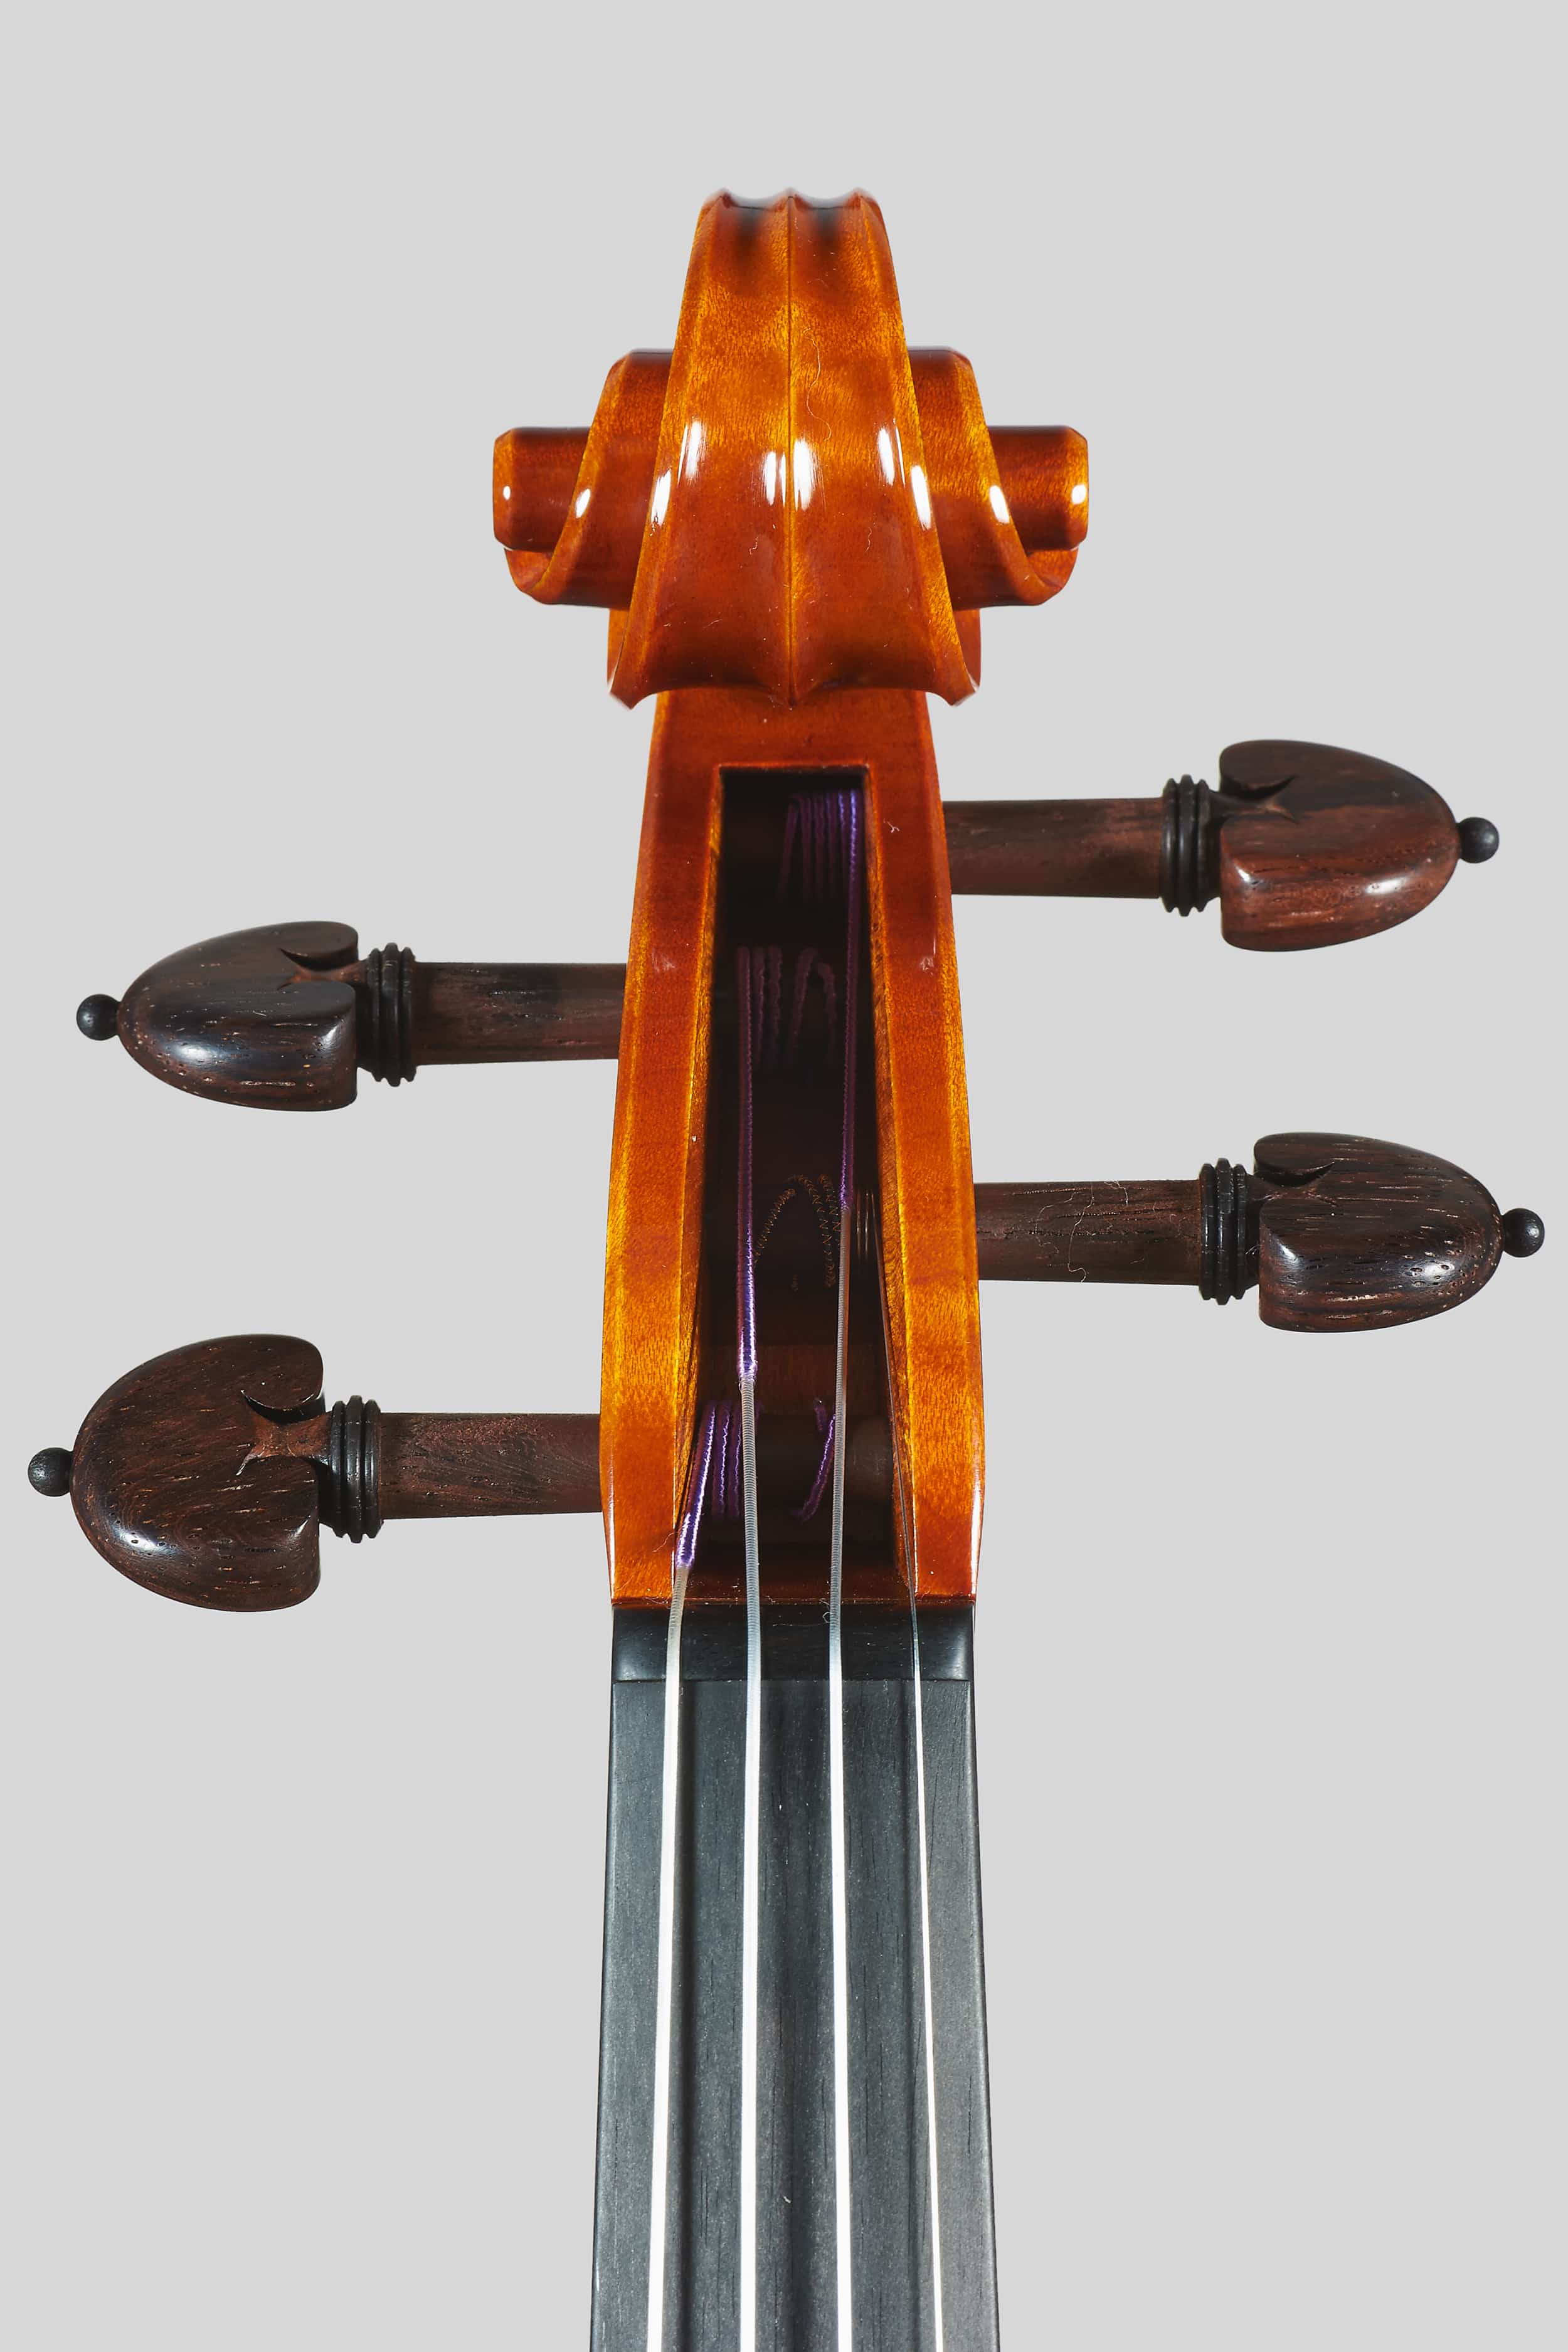 Anno 2016 – Violino modello A. Stradivari “Soil” 1714 - Testa fronte